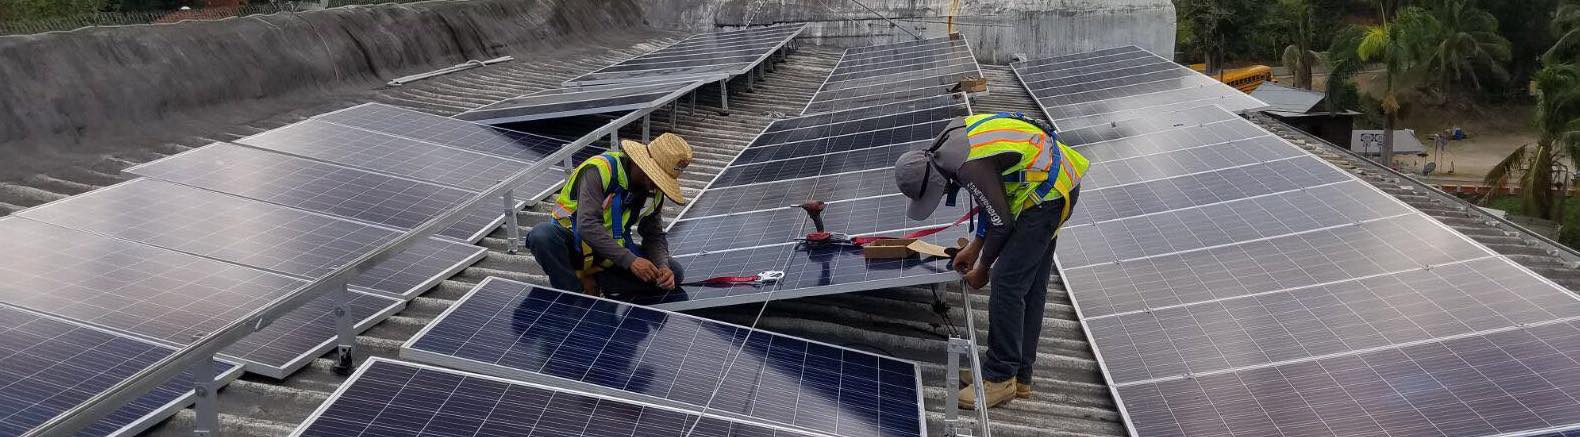 Solar Workforce Development